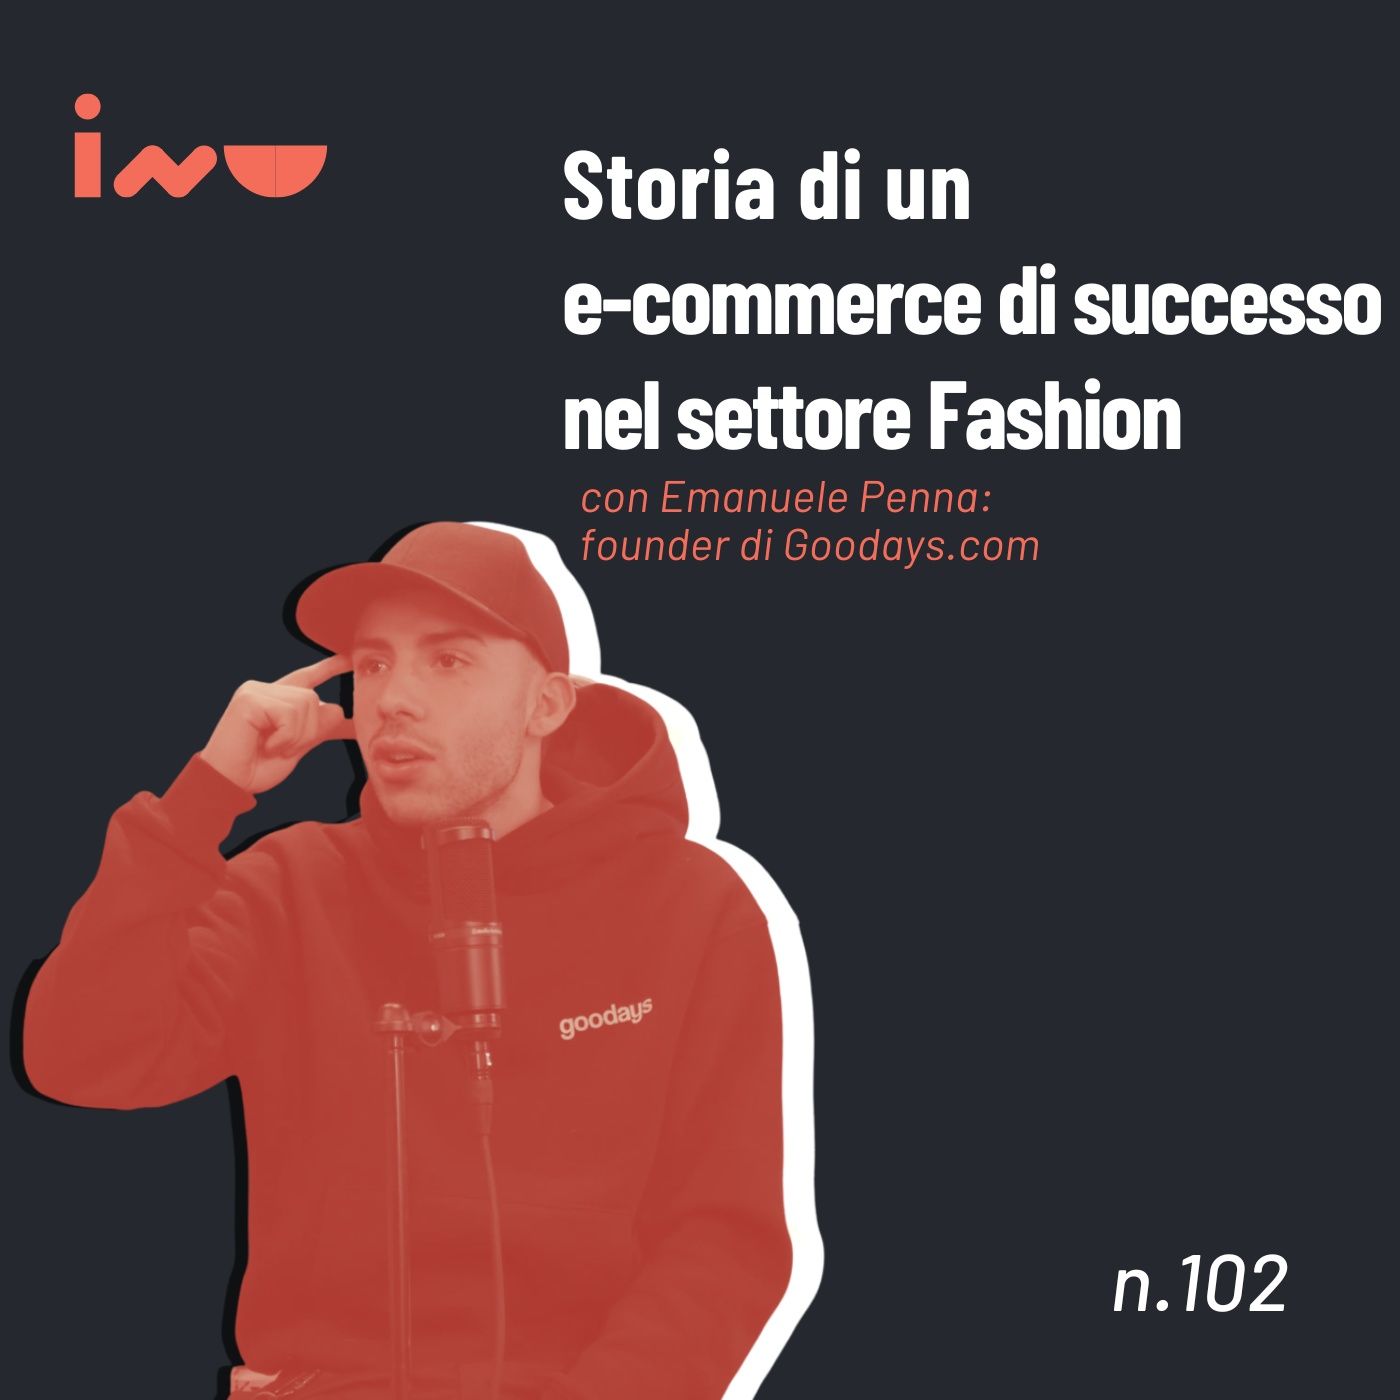 Storia di un e-commerce di successo nel settore Fashion